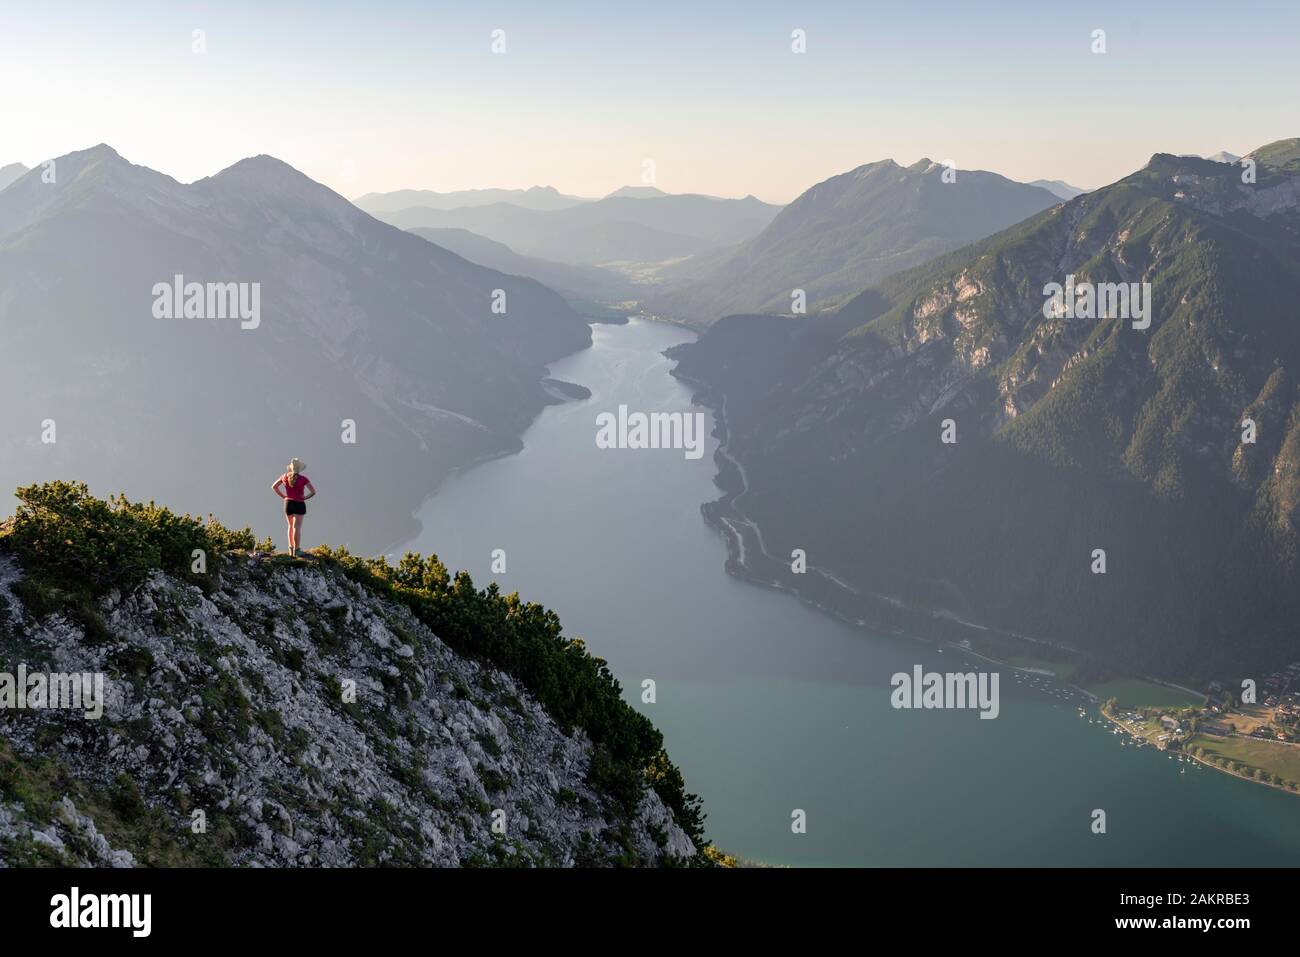 Giovane donna che si affaccia su un paesaggio di montagna, vista dal monte Baerenkopf al Lago Achensee, sinistra e Seebergspitze Seekarspitze, destra Rofan Foto Stock